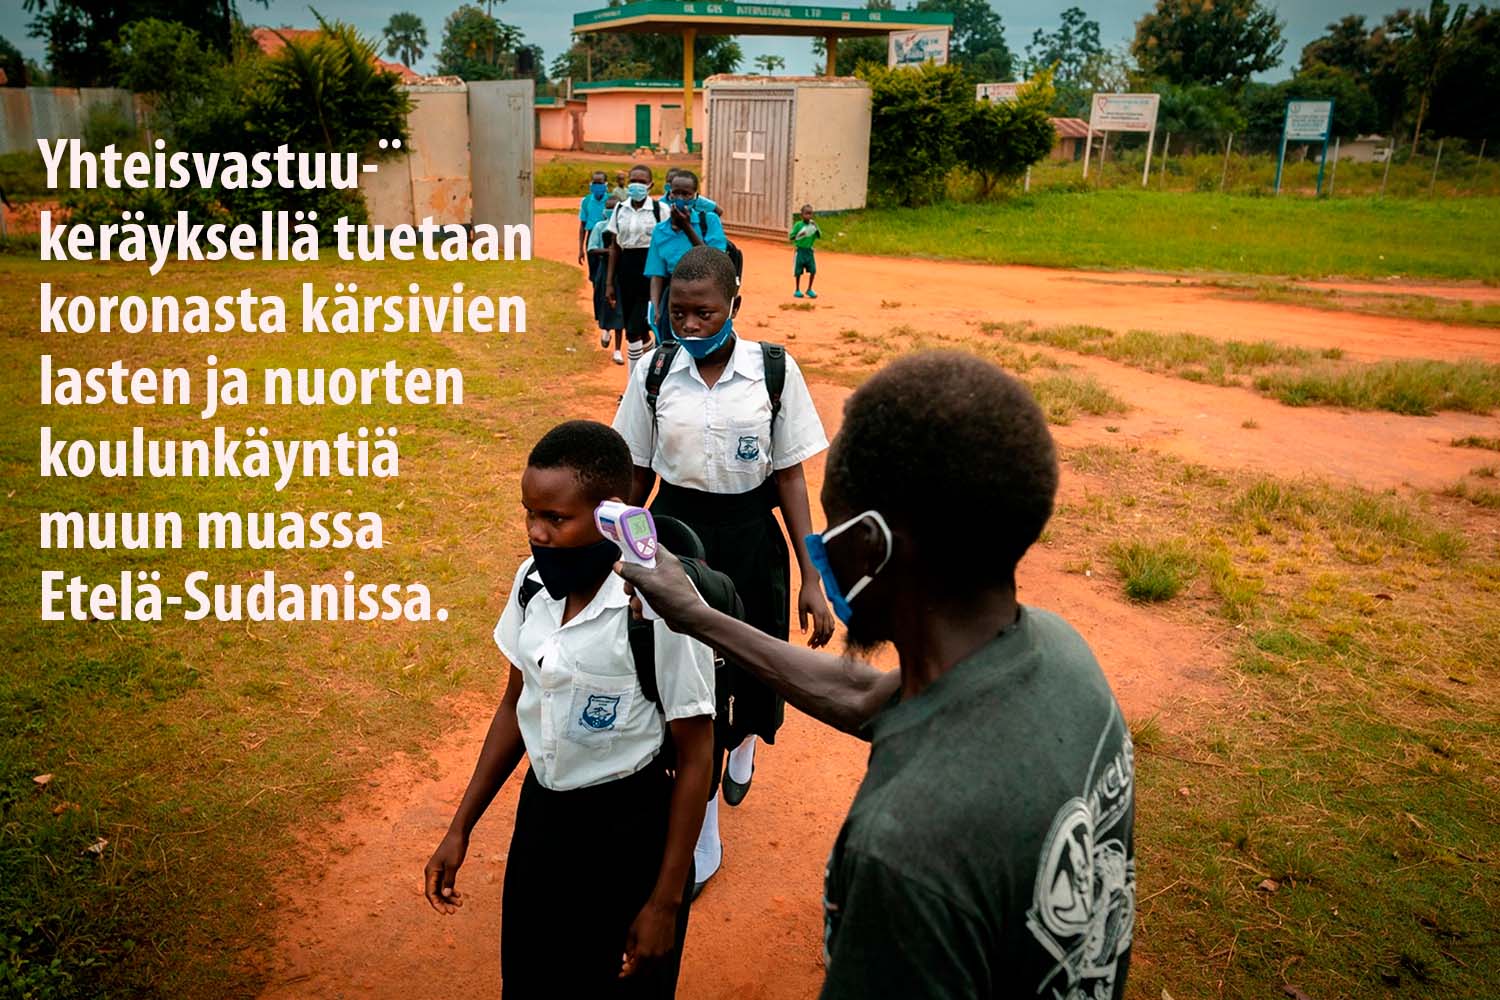 Yhteisvastuu-keräyksellä tuetaan koronasta kärsivien lasten ja nuorten koulunkäyntiä Etelä-Sudanissa.